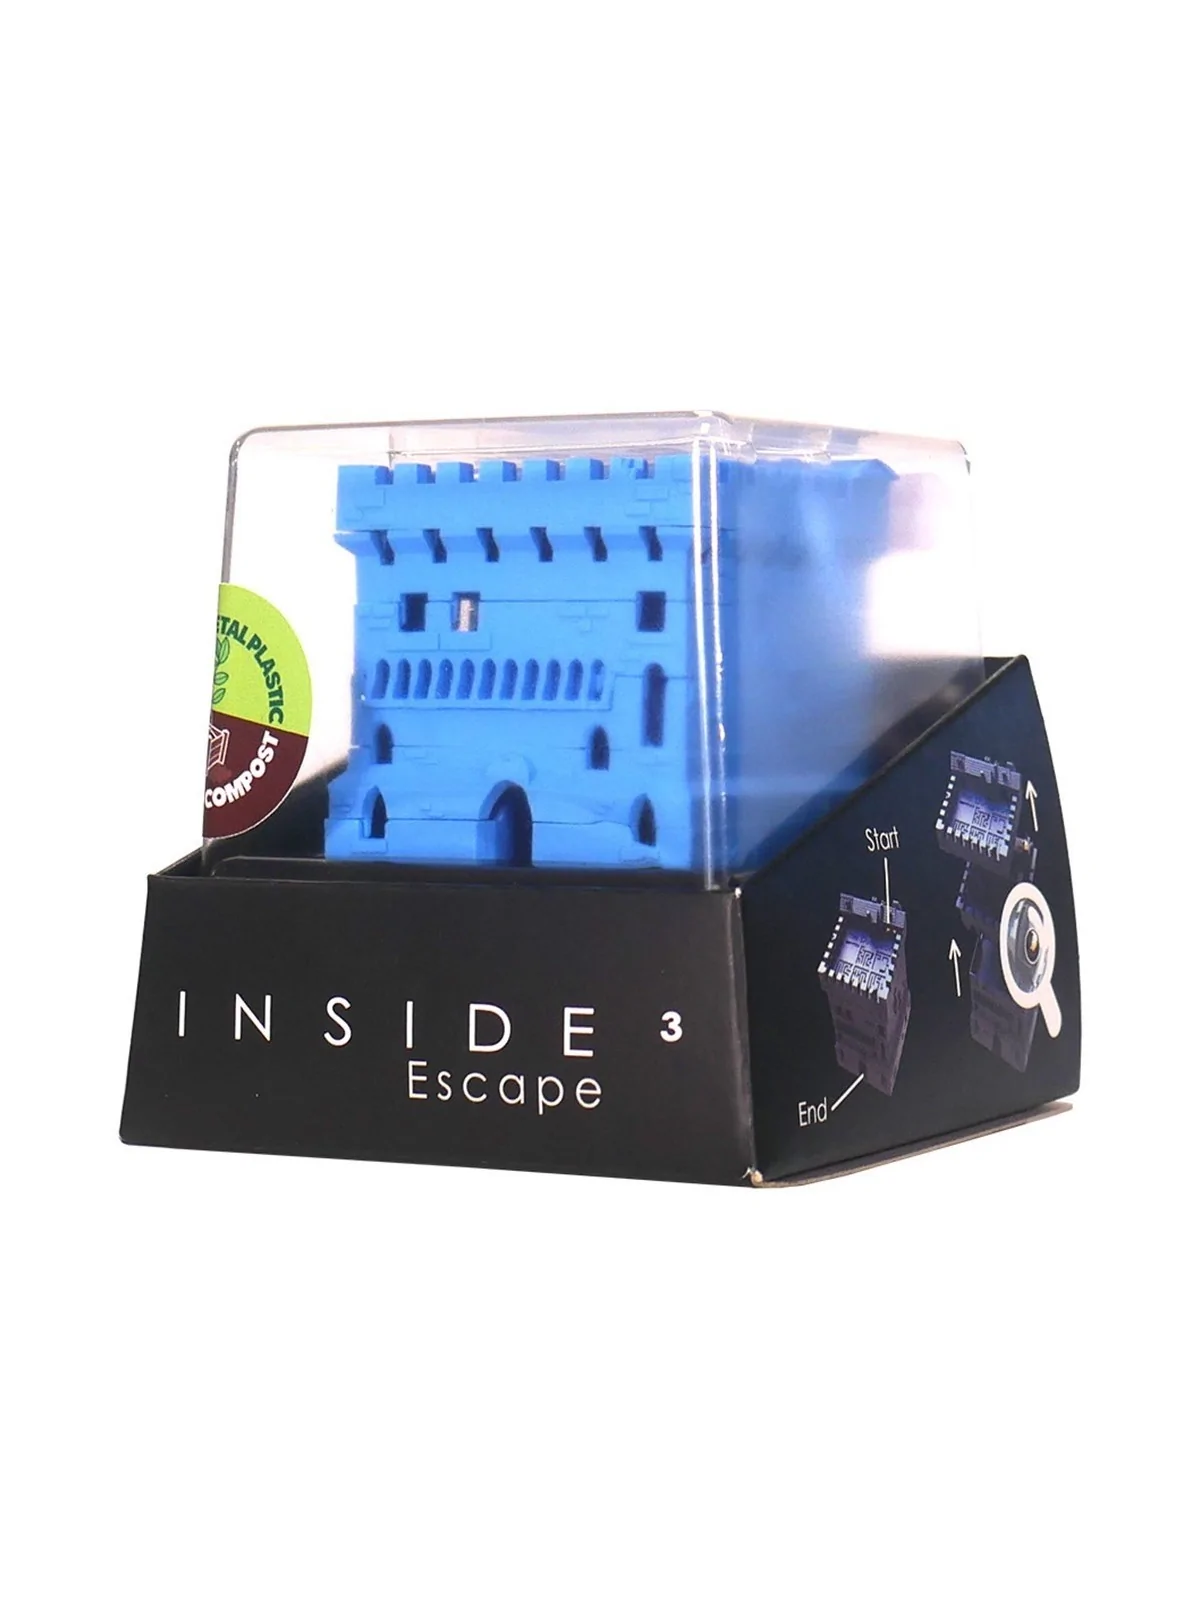 Comprar Inside 3 Escape: The Dungeon barato al mejor precio 13,56 € de